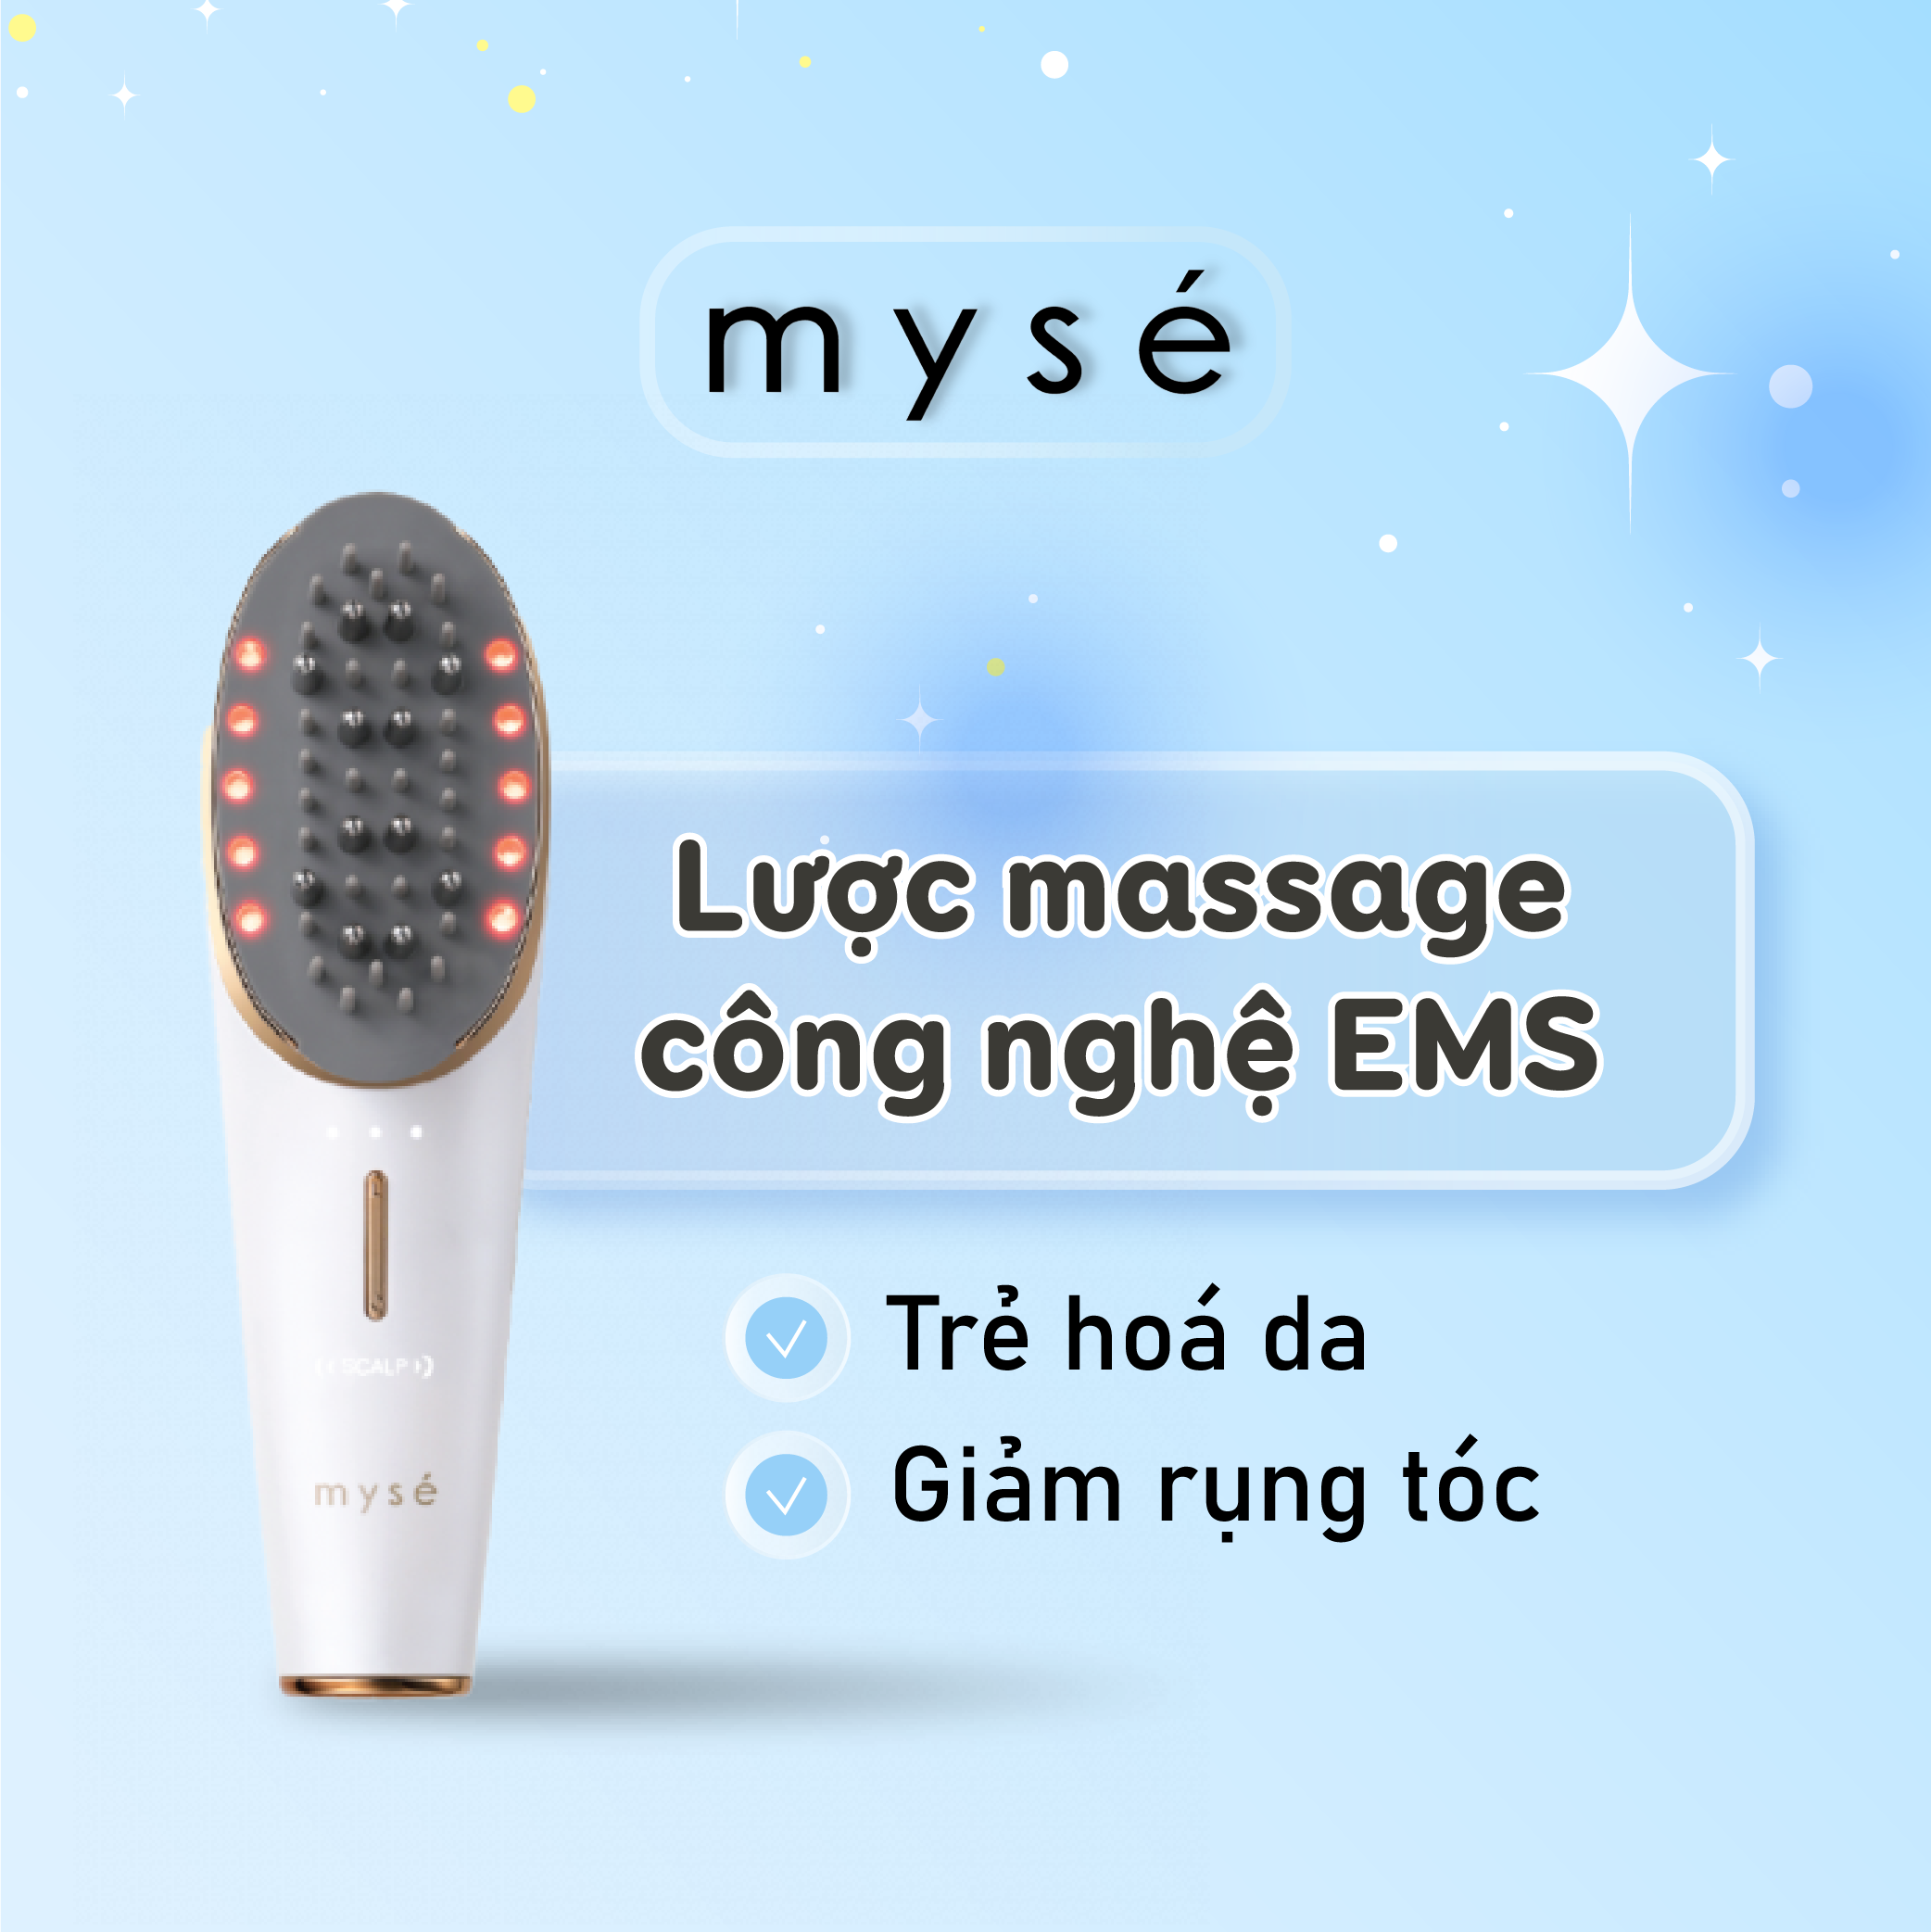 Lược massage YA-MAN Ltd. Myse công nghệ EMS trẻ hóa da, giảm rụng tóc